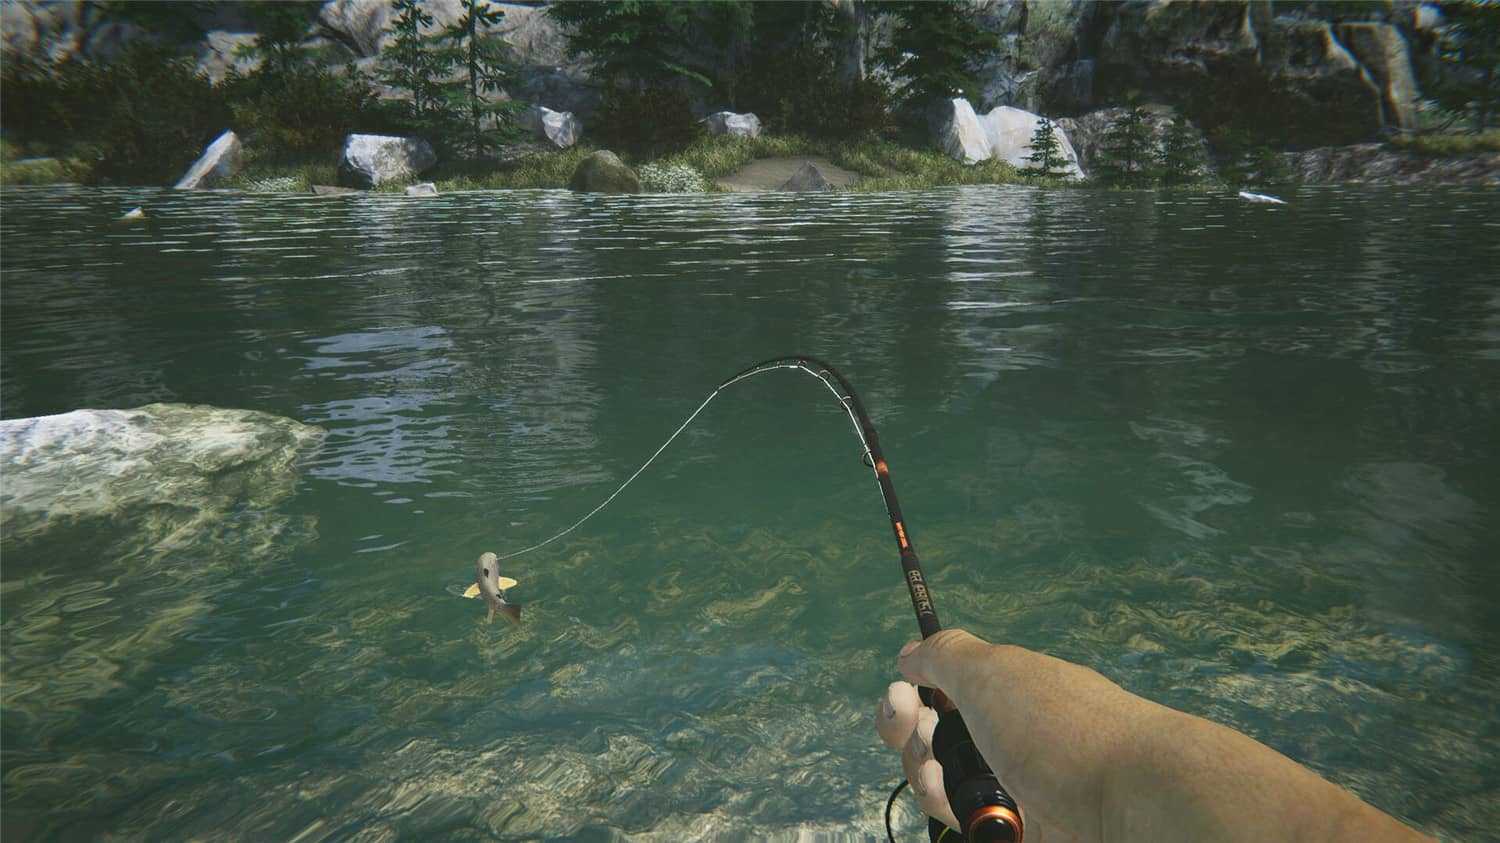 终极钓鱼模拟器2/Ultimate Fishing Simulator 2